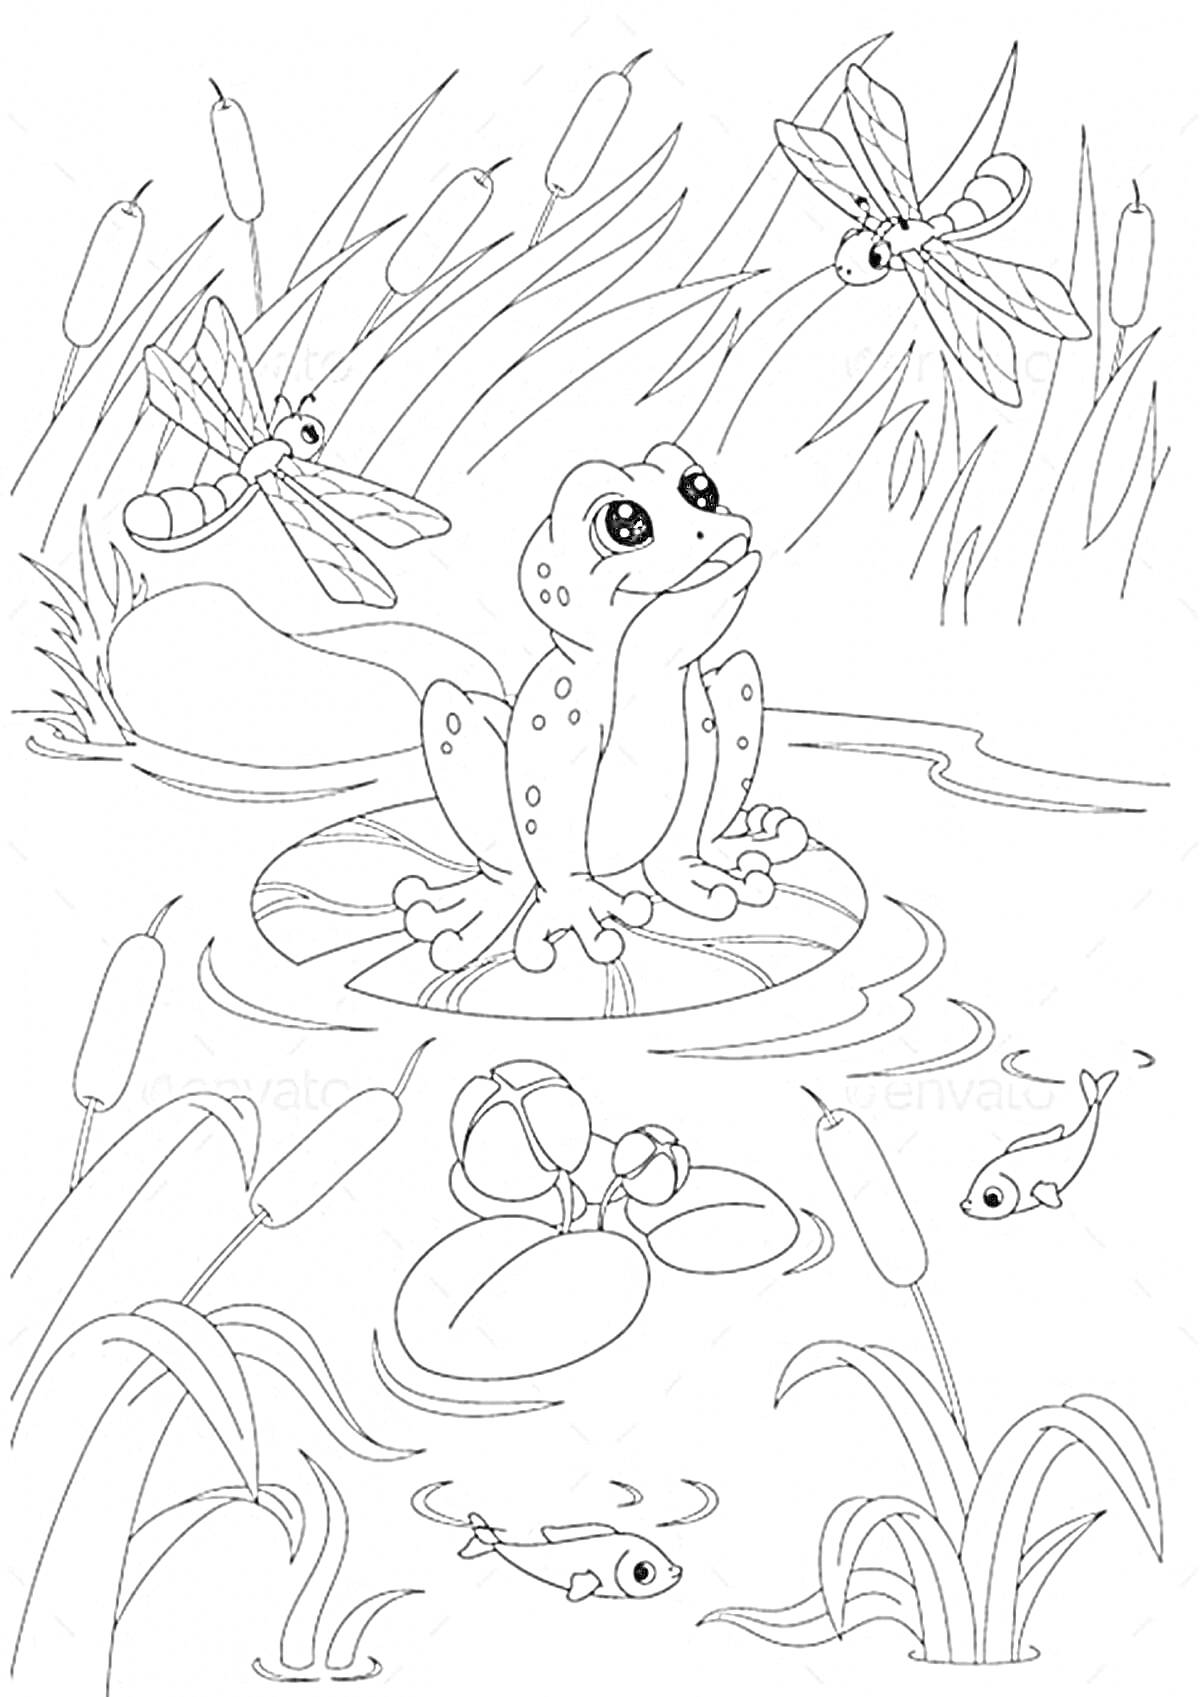 Раскраска Лягушка путешественница: лягушка, стрекозы, камыши, водяные лилии, рыбка, озеро